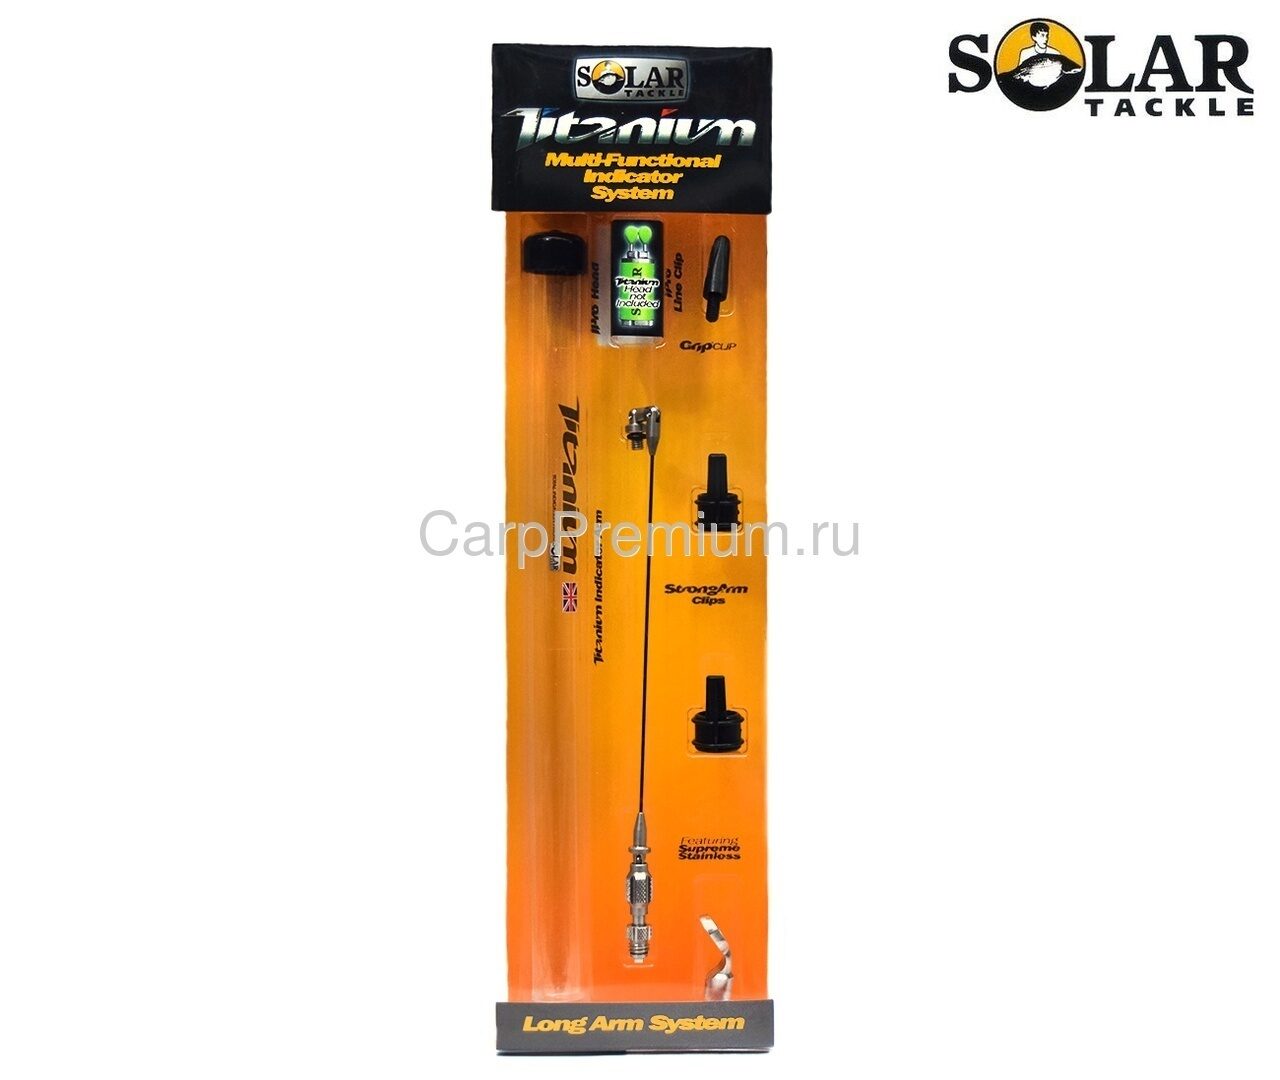 Натяжитель для механического сигнализатора Solar (Солар) - Titanium Long Arm Only, Размер Long / Длинный